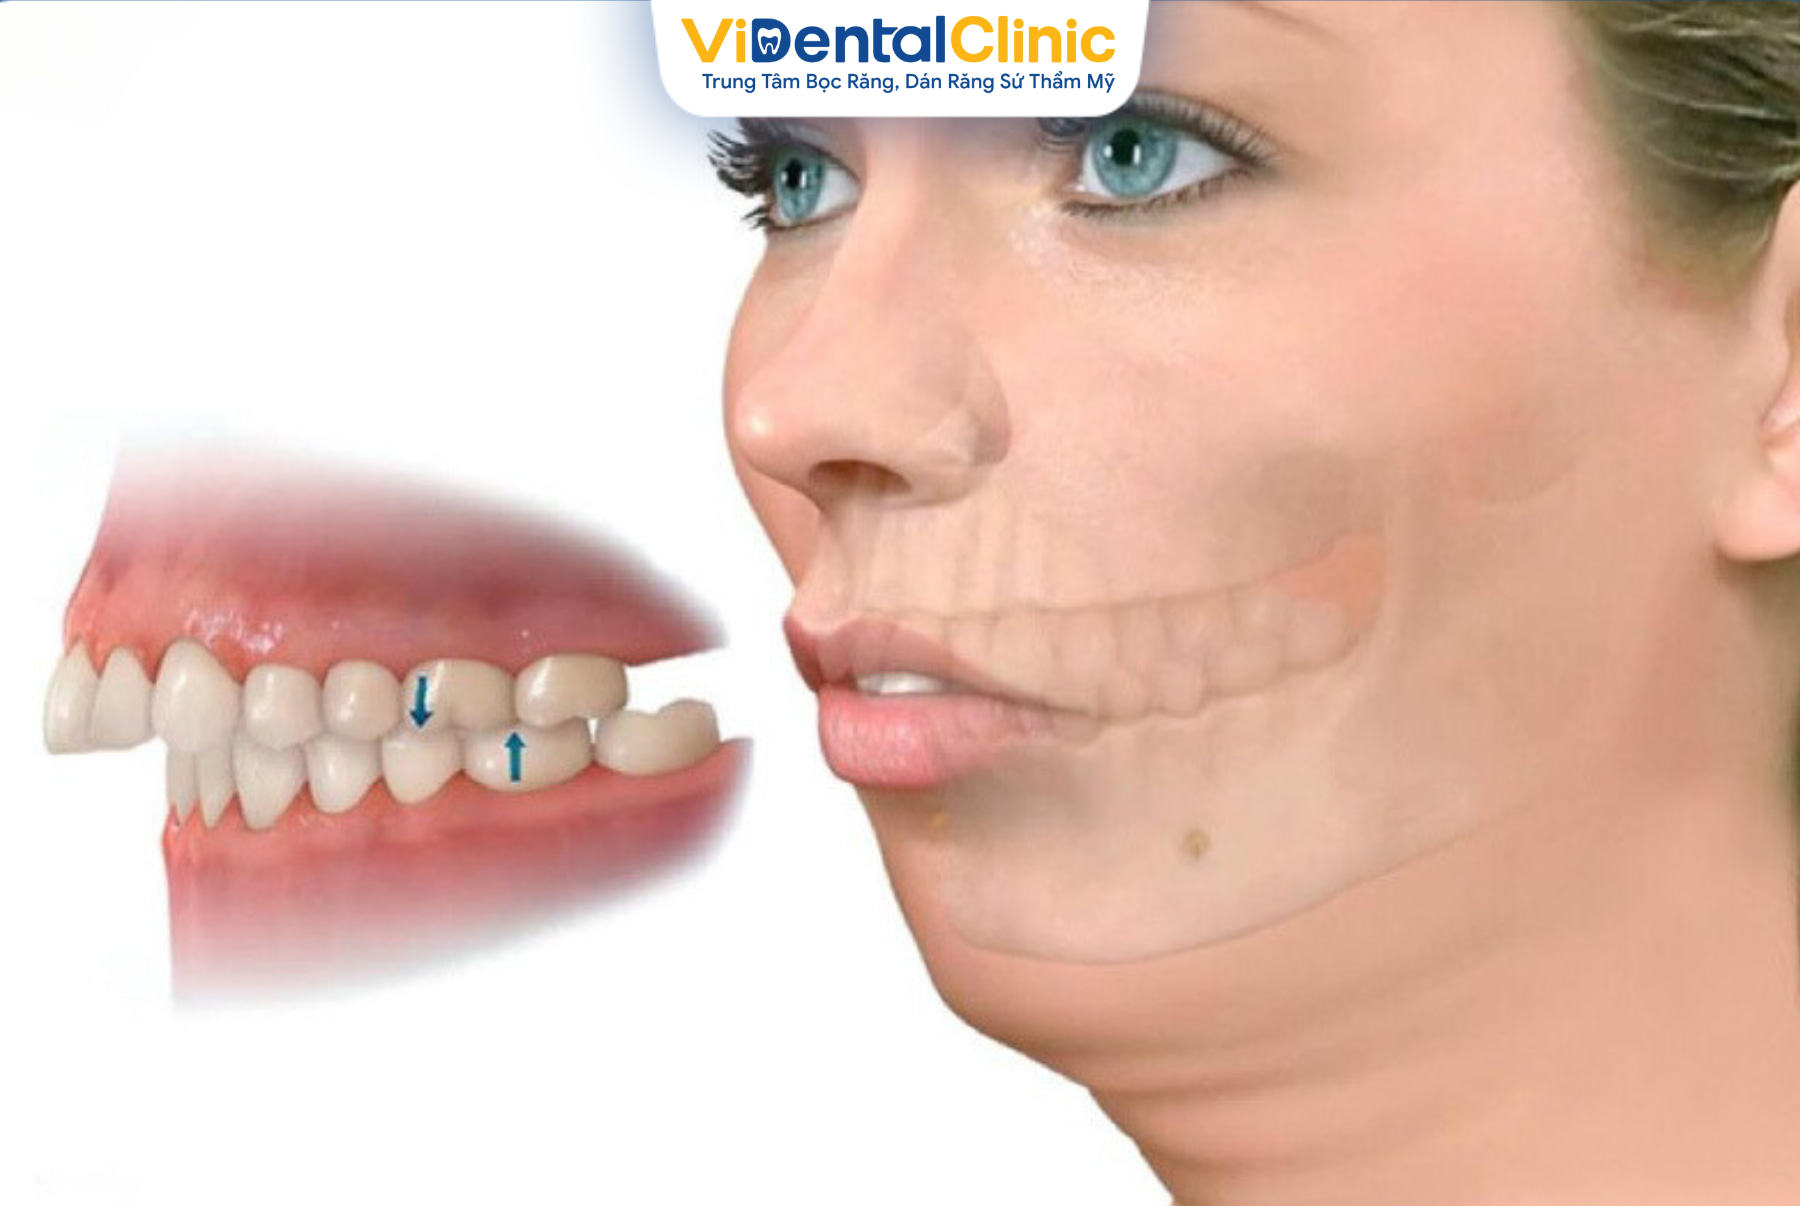 Bọc sứ là kỹ thuật chỉnh hình cho răng hô được áp dụng phổ biến trong nha khoa